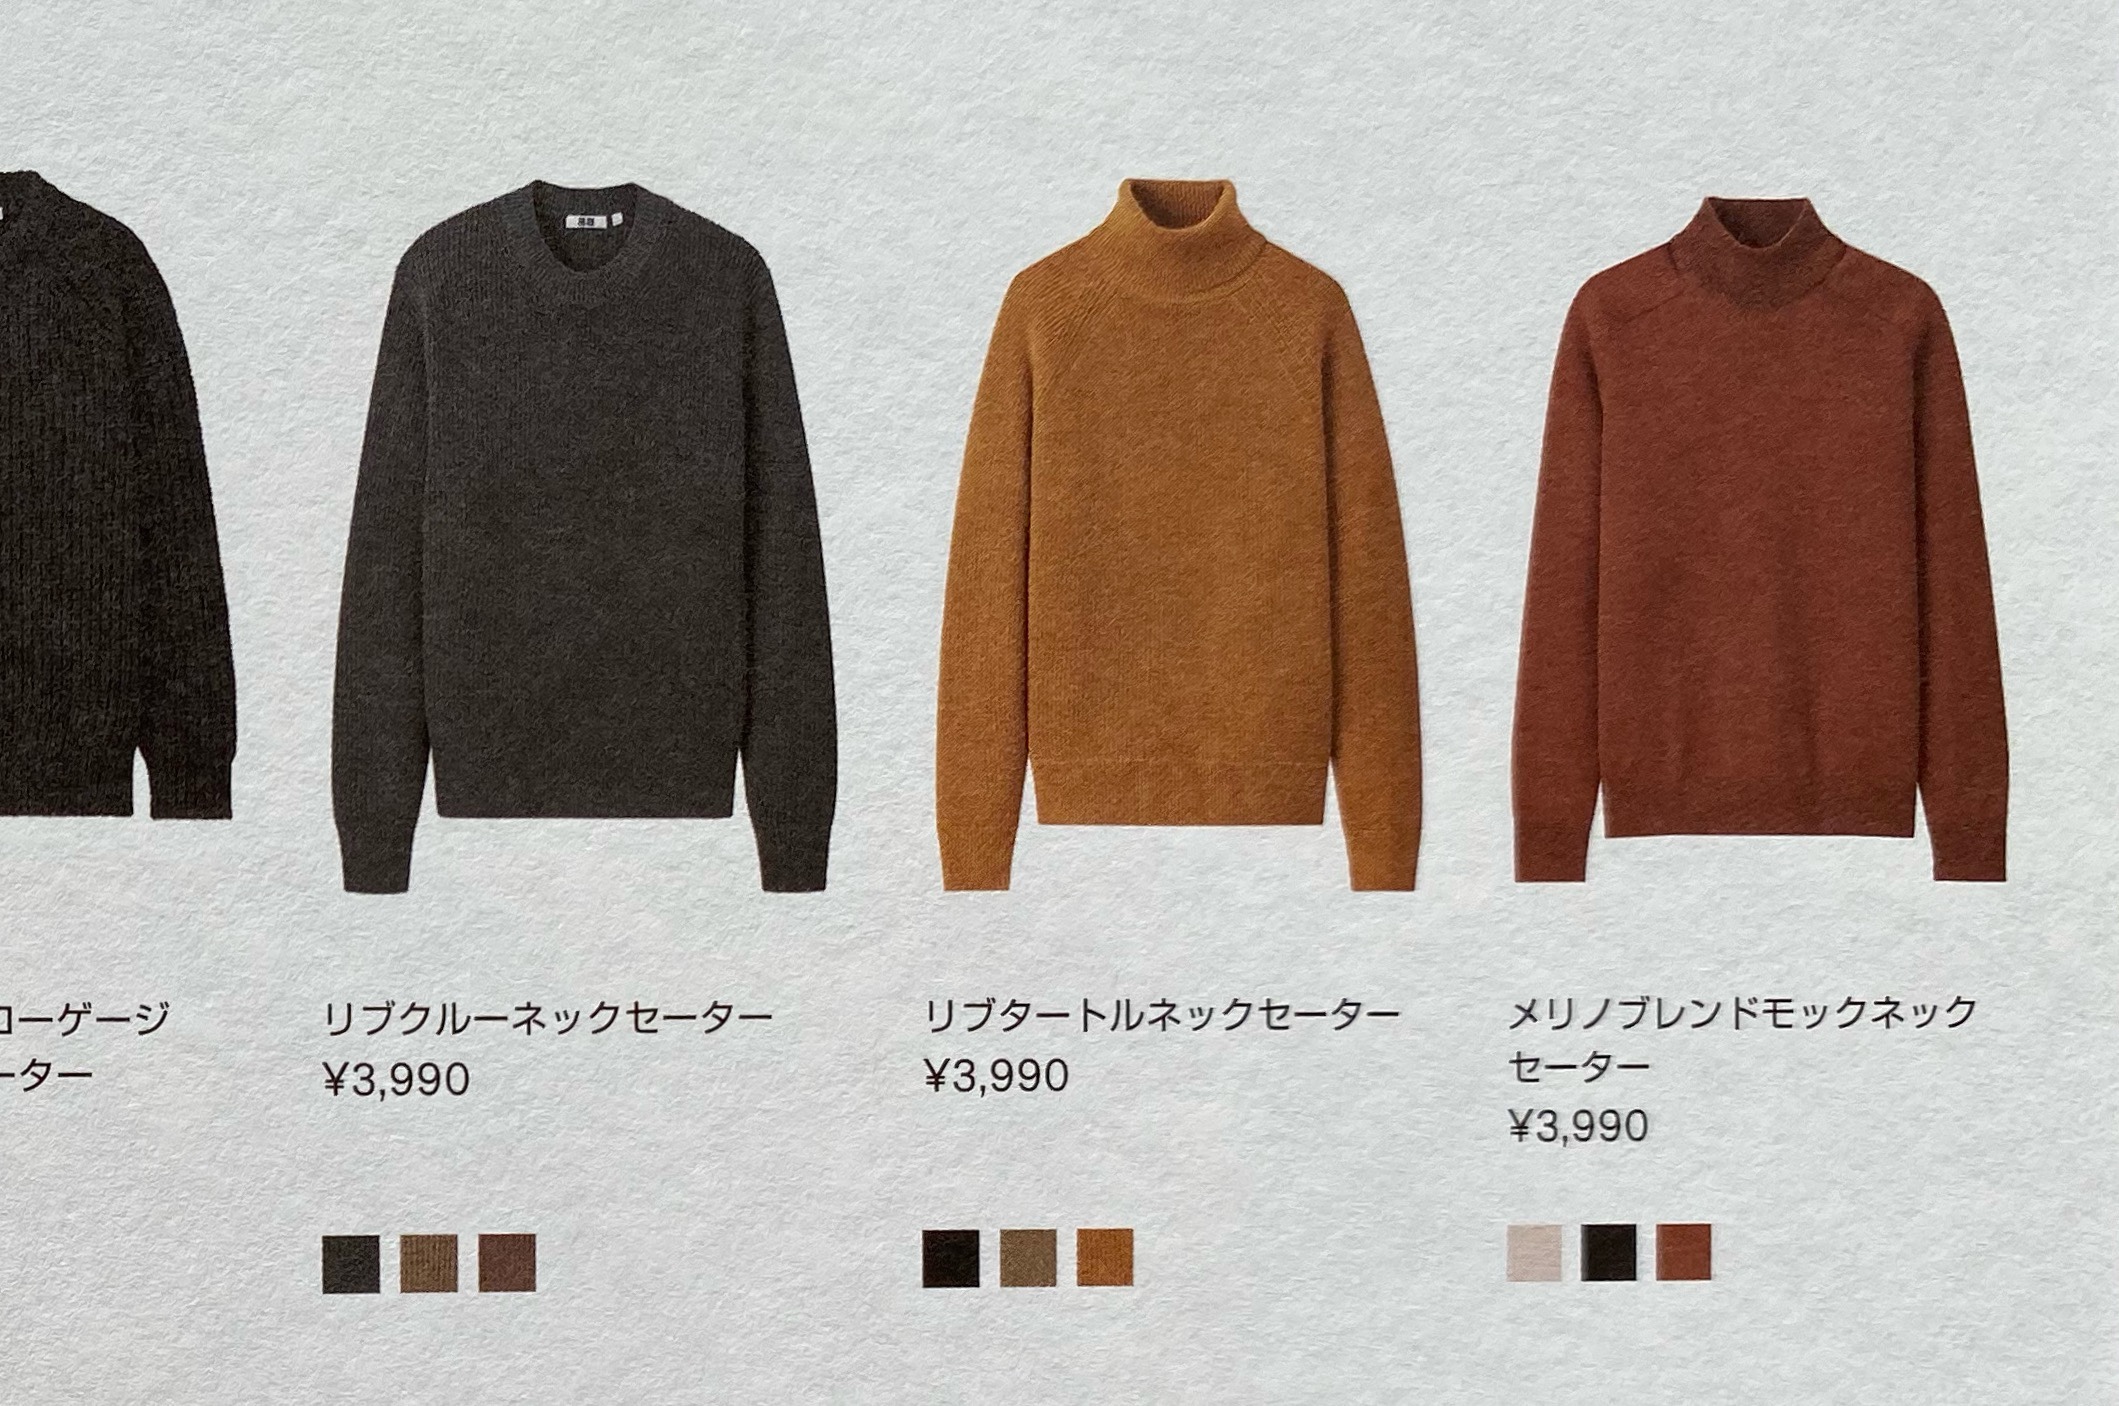 ユニクロユーのアイテムはカタログでチェック。「メリノブレンドモックネックセーター」を買おう。